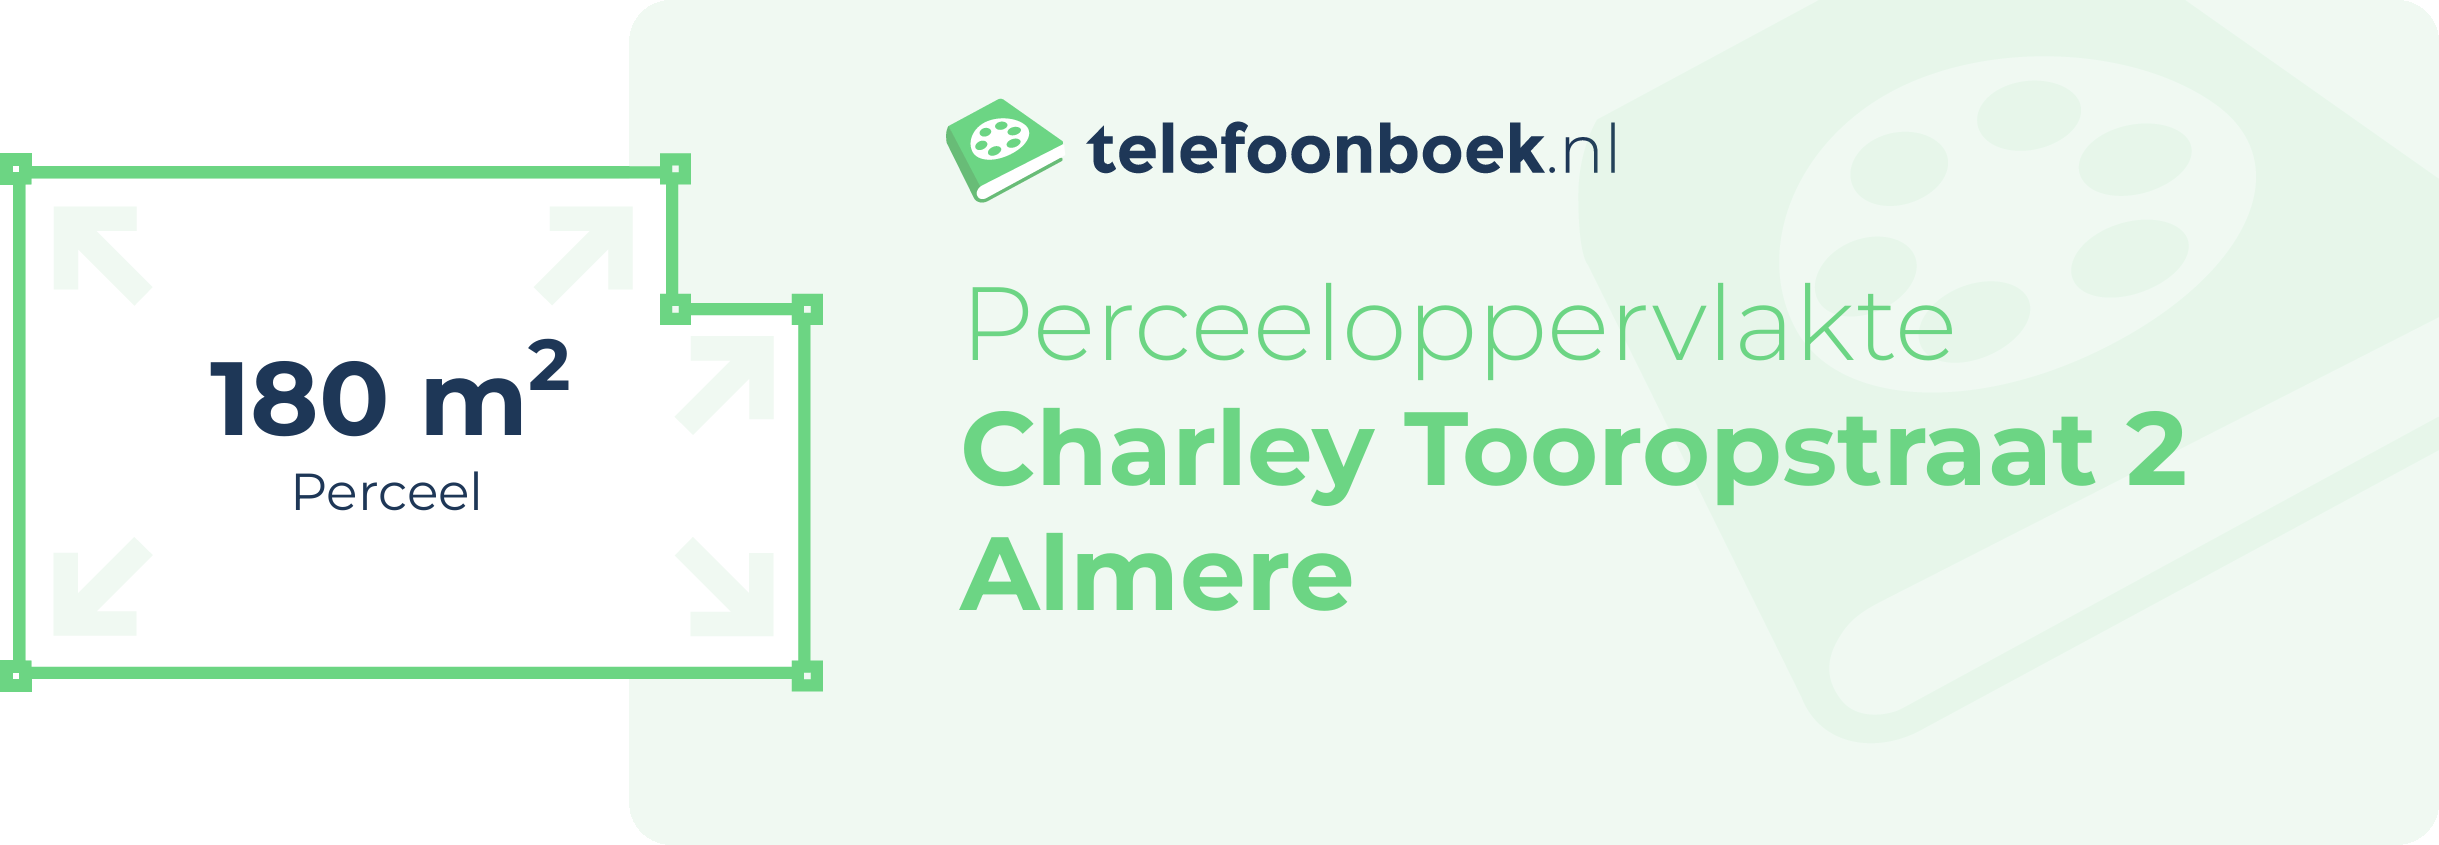 Perceeloppervlakte Charley Tooropstraat 2 Almere